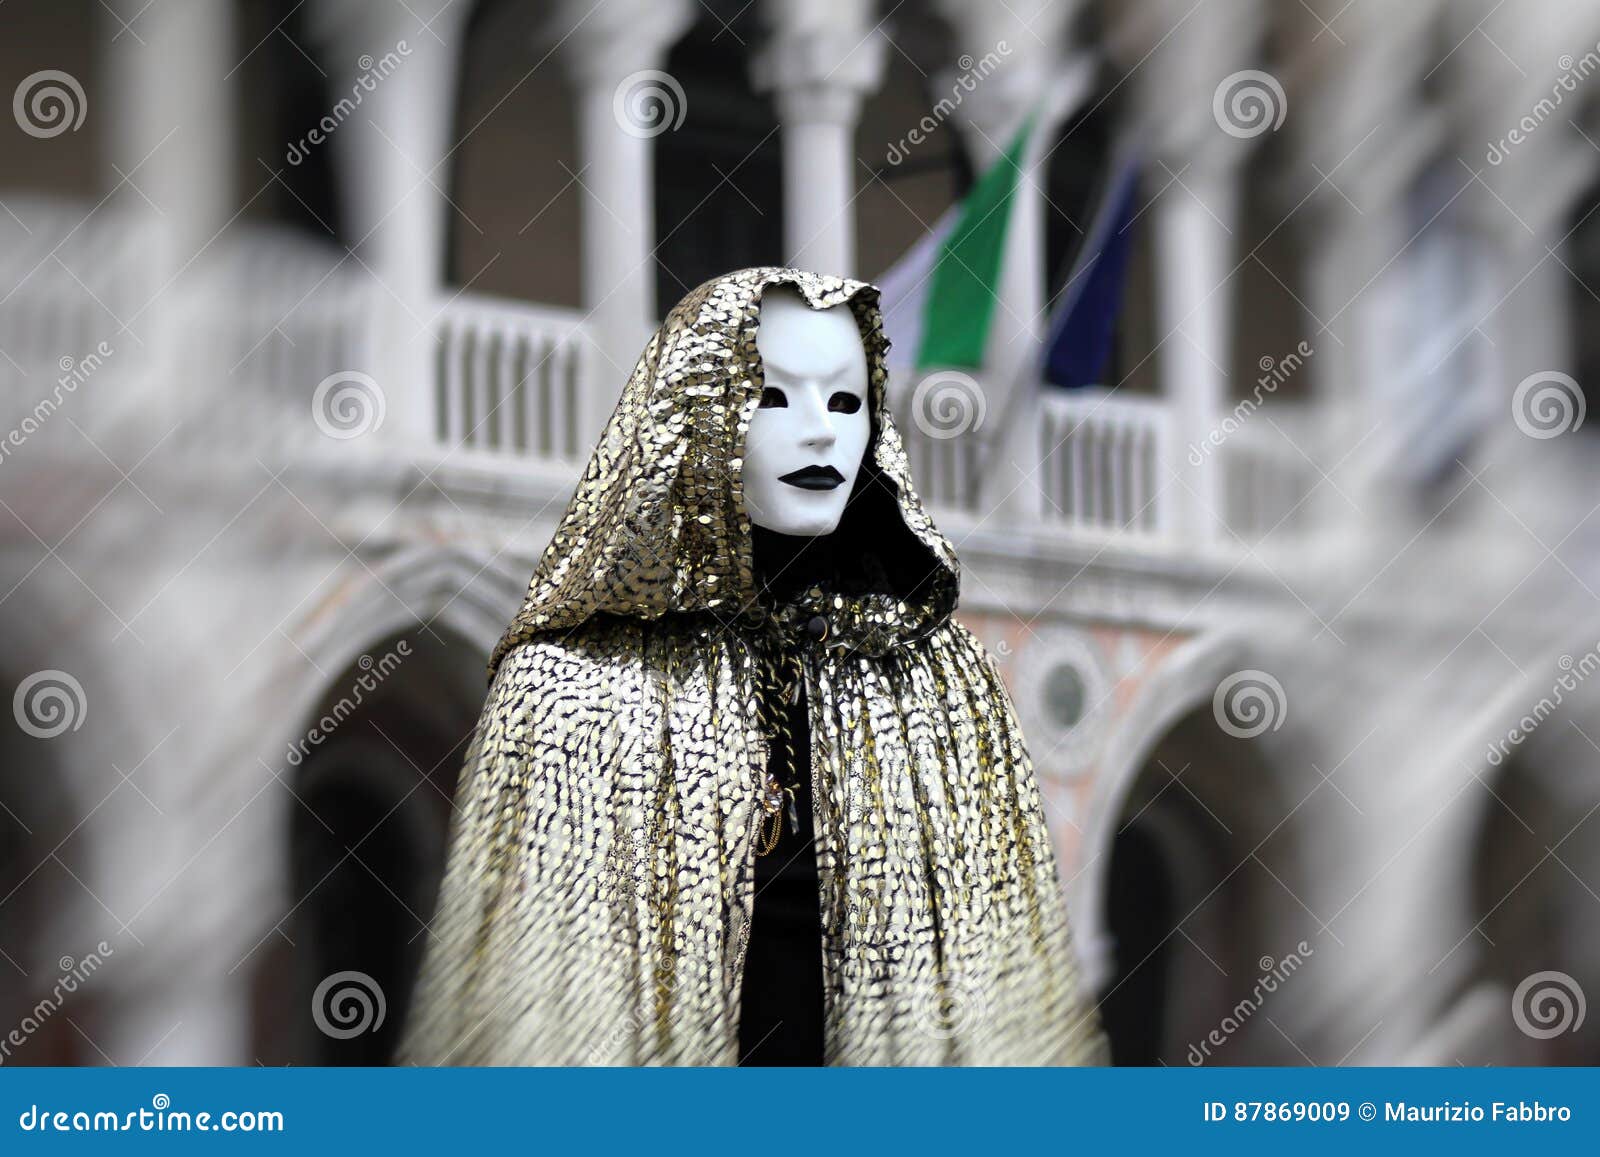 italy Ã¢â¬â venezia - carnival - eerie mask